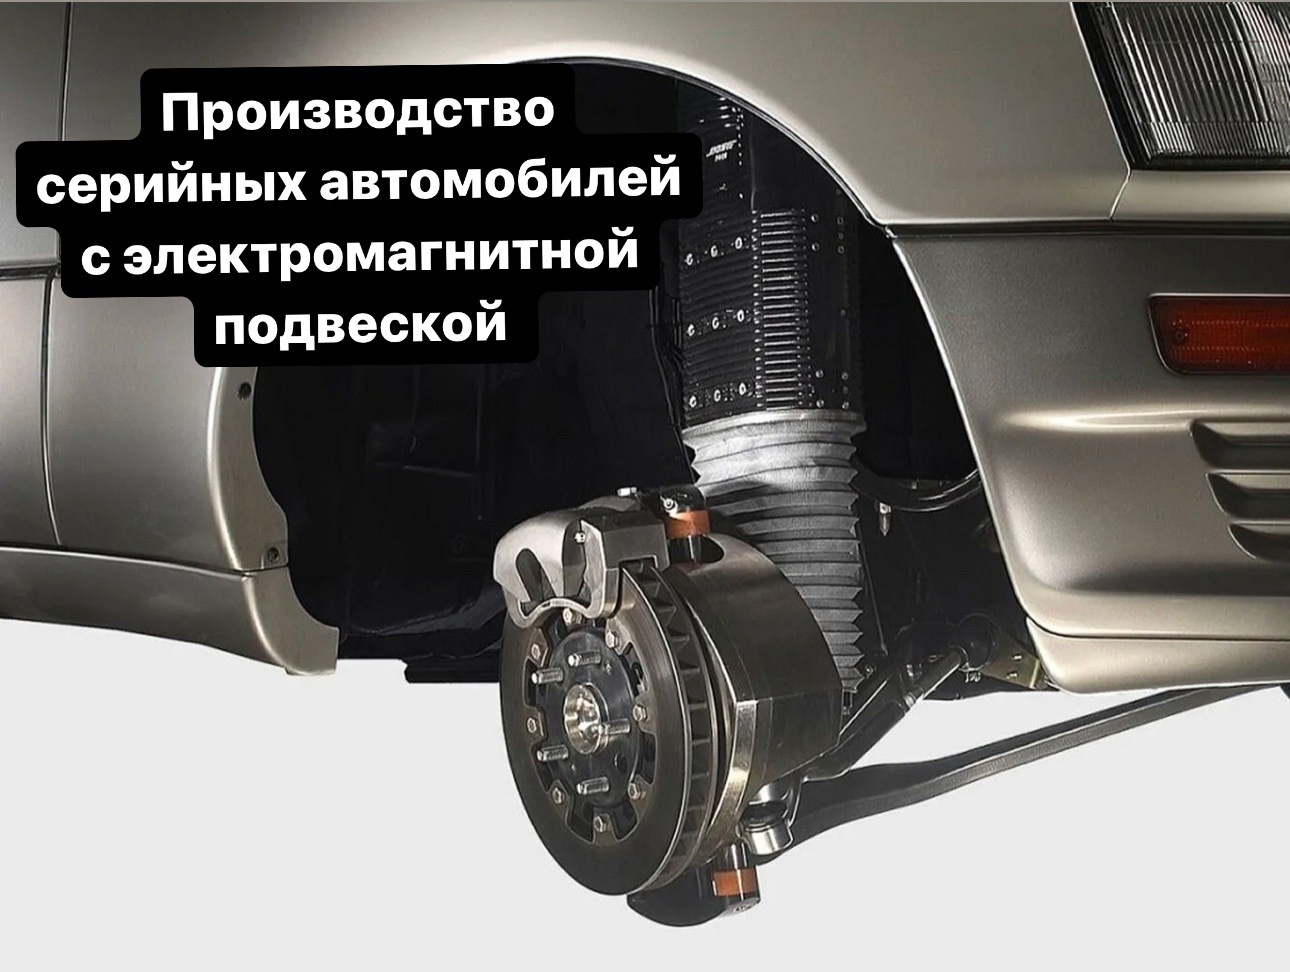 Производство серийных автомобилей с электромагнитной подвеской